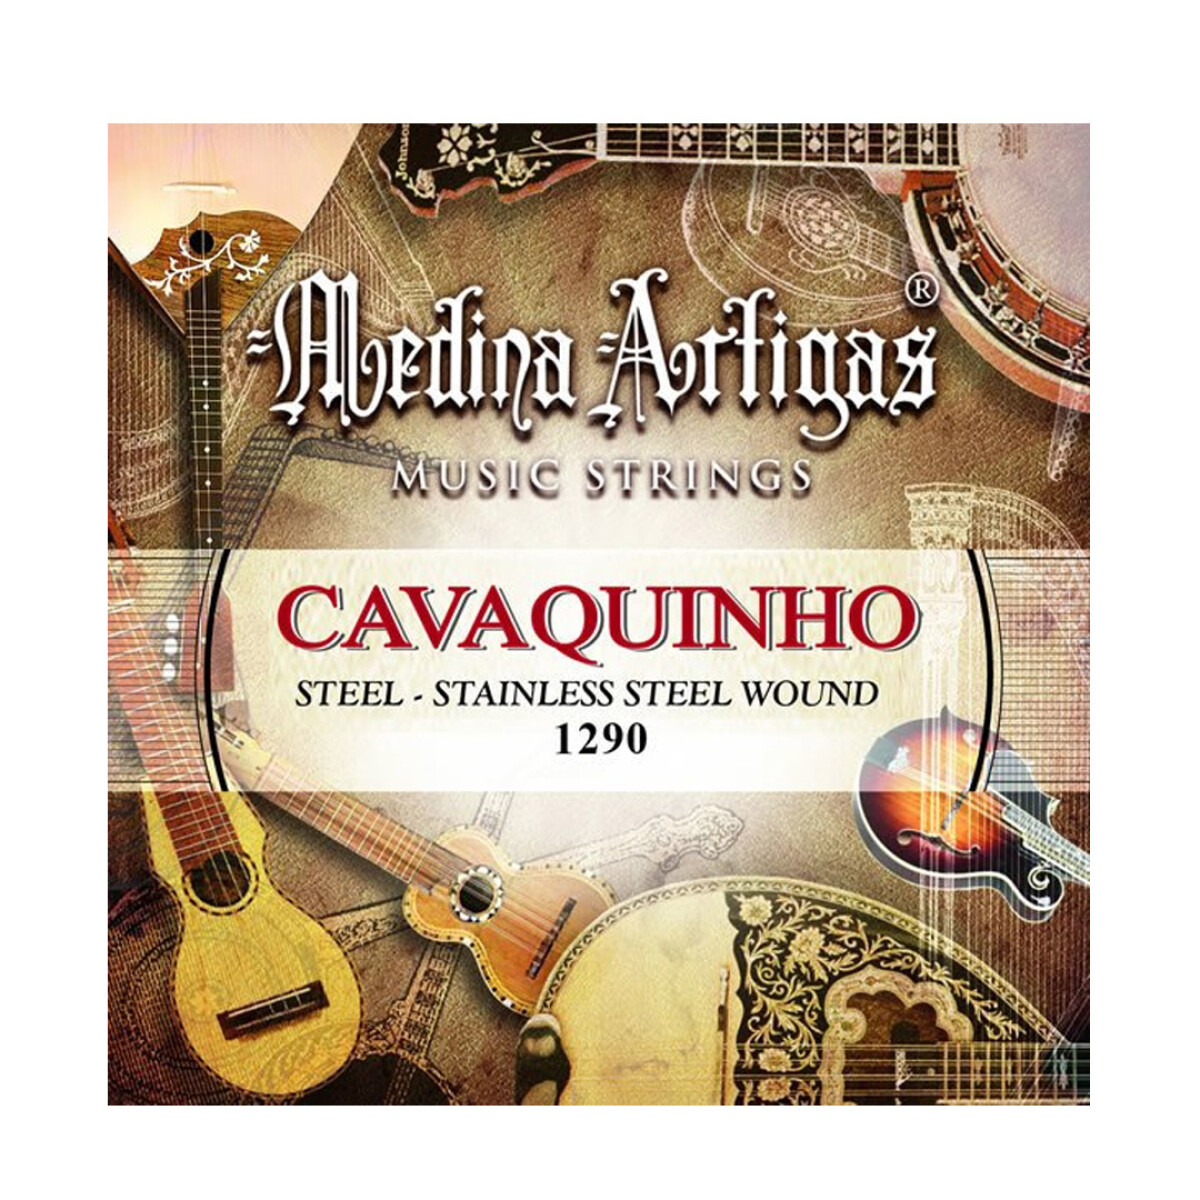 Encordado Cavaquinho - Medina Artigas 